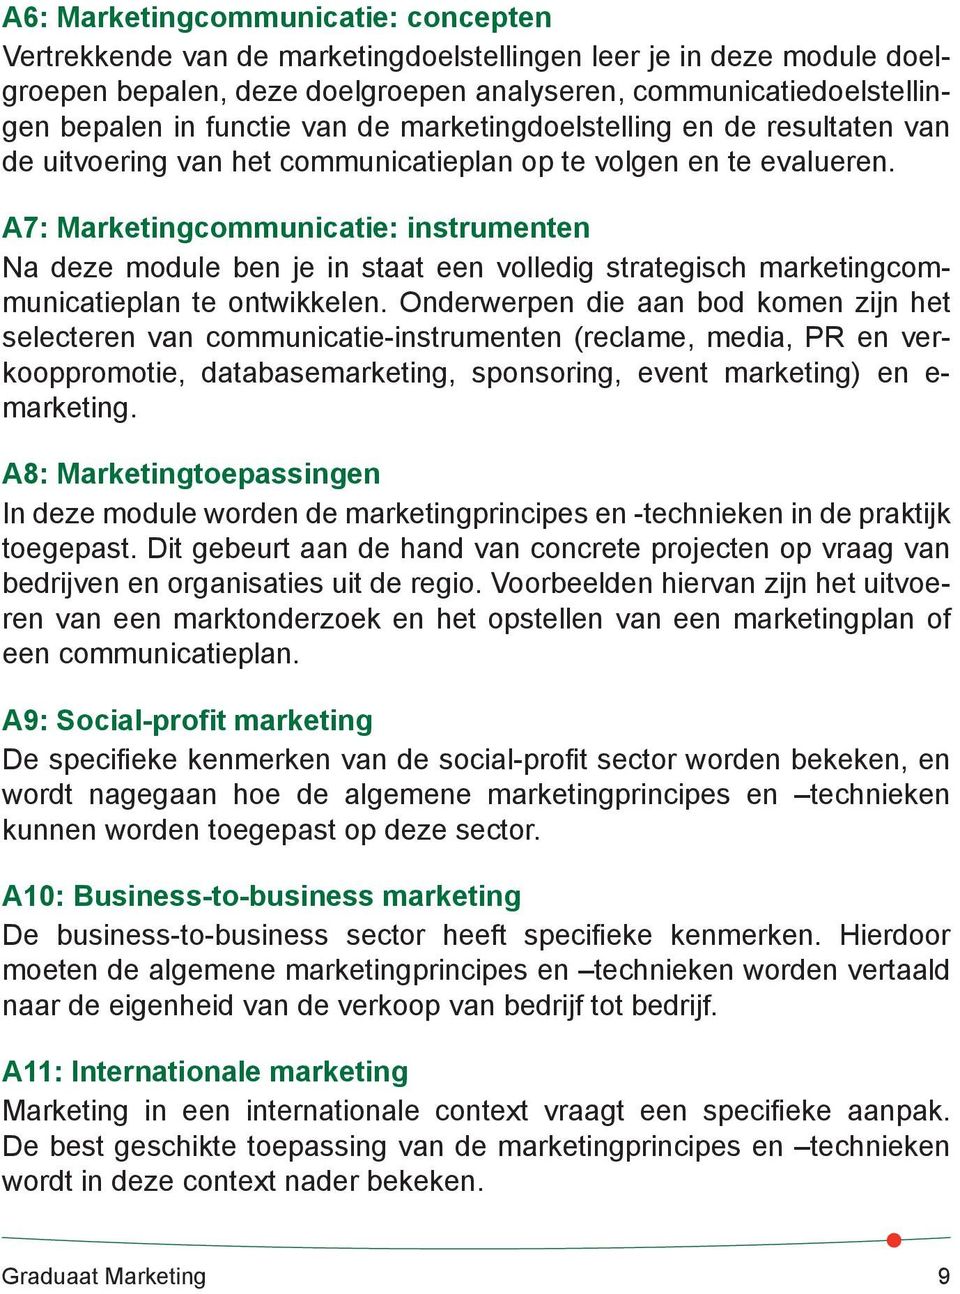 A7: Marketingcommunicatie: instrumenten Na deze module ben je in staat een volledig strategisch marketingcommunicatieplan te ontwikkelen.